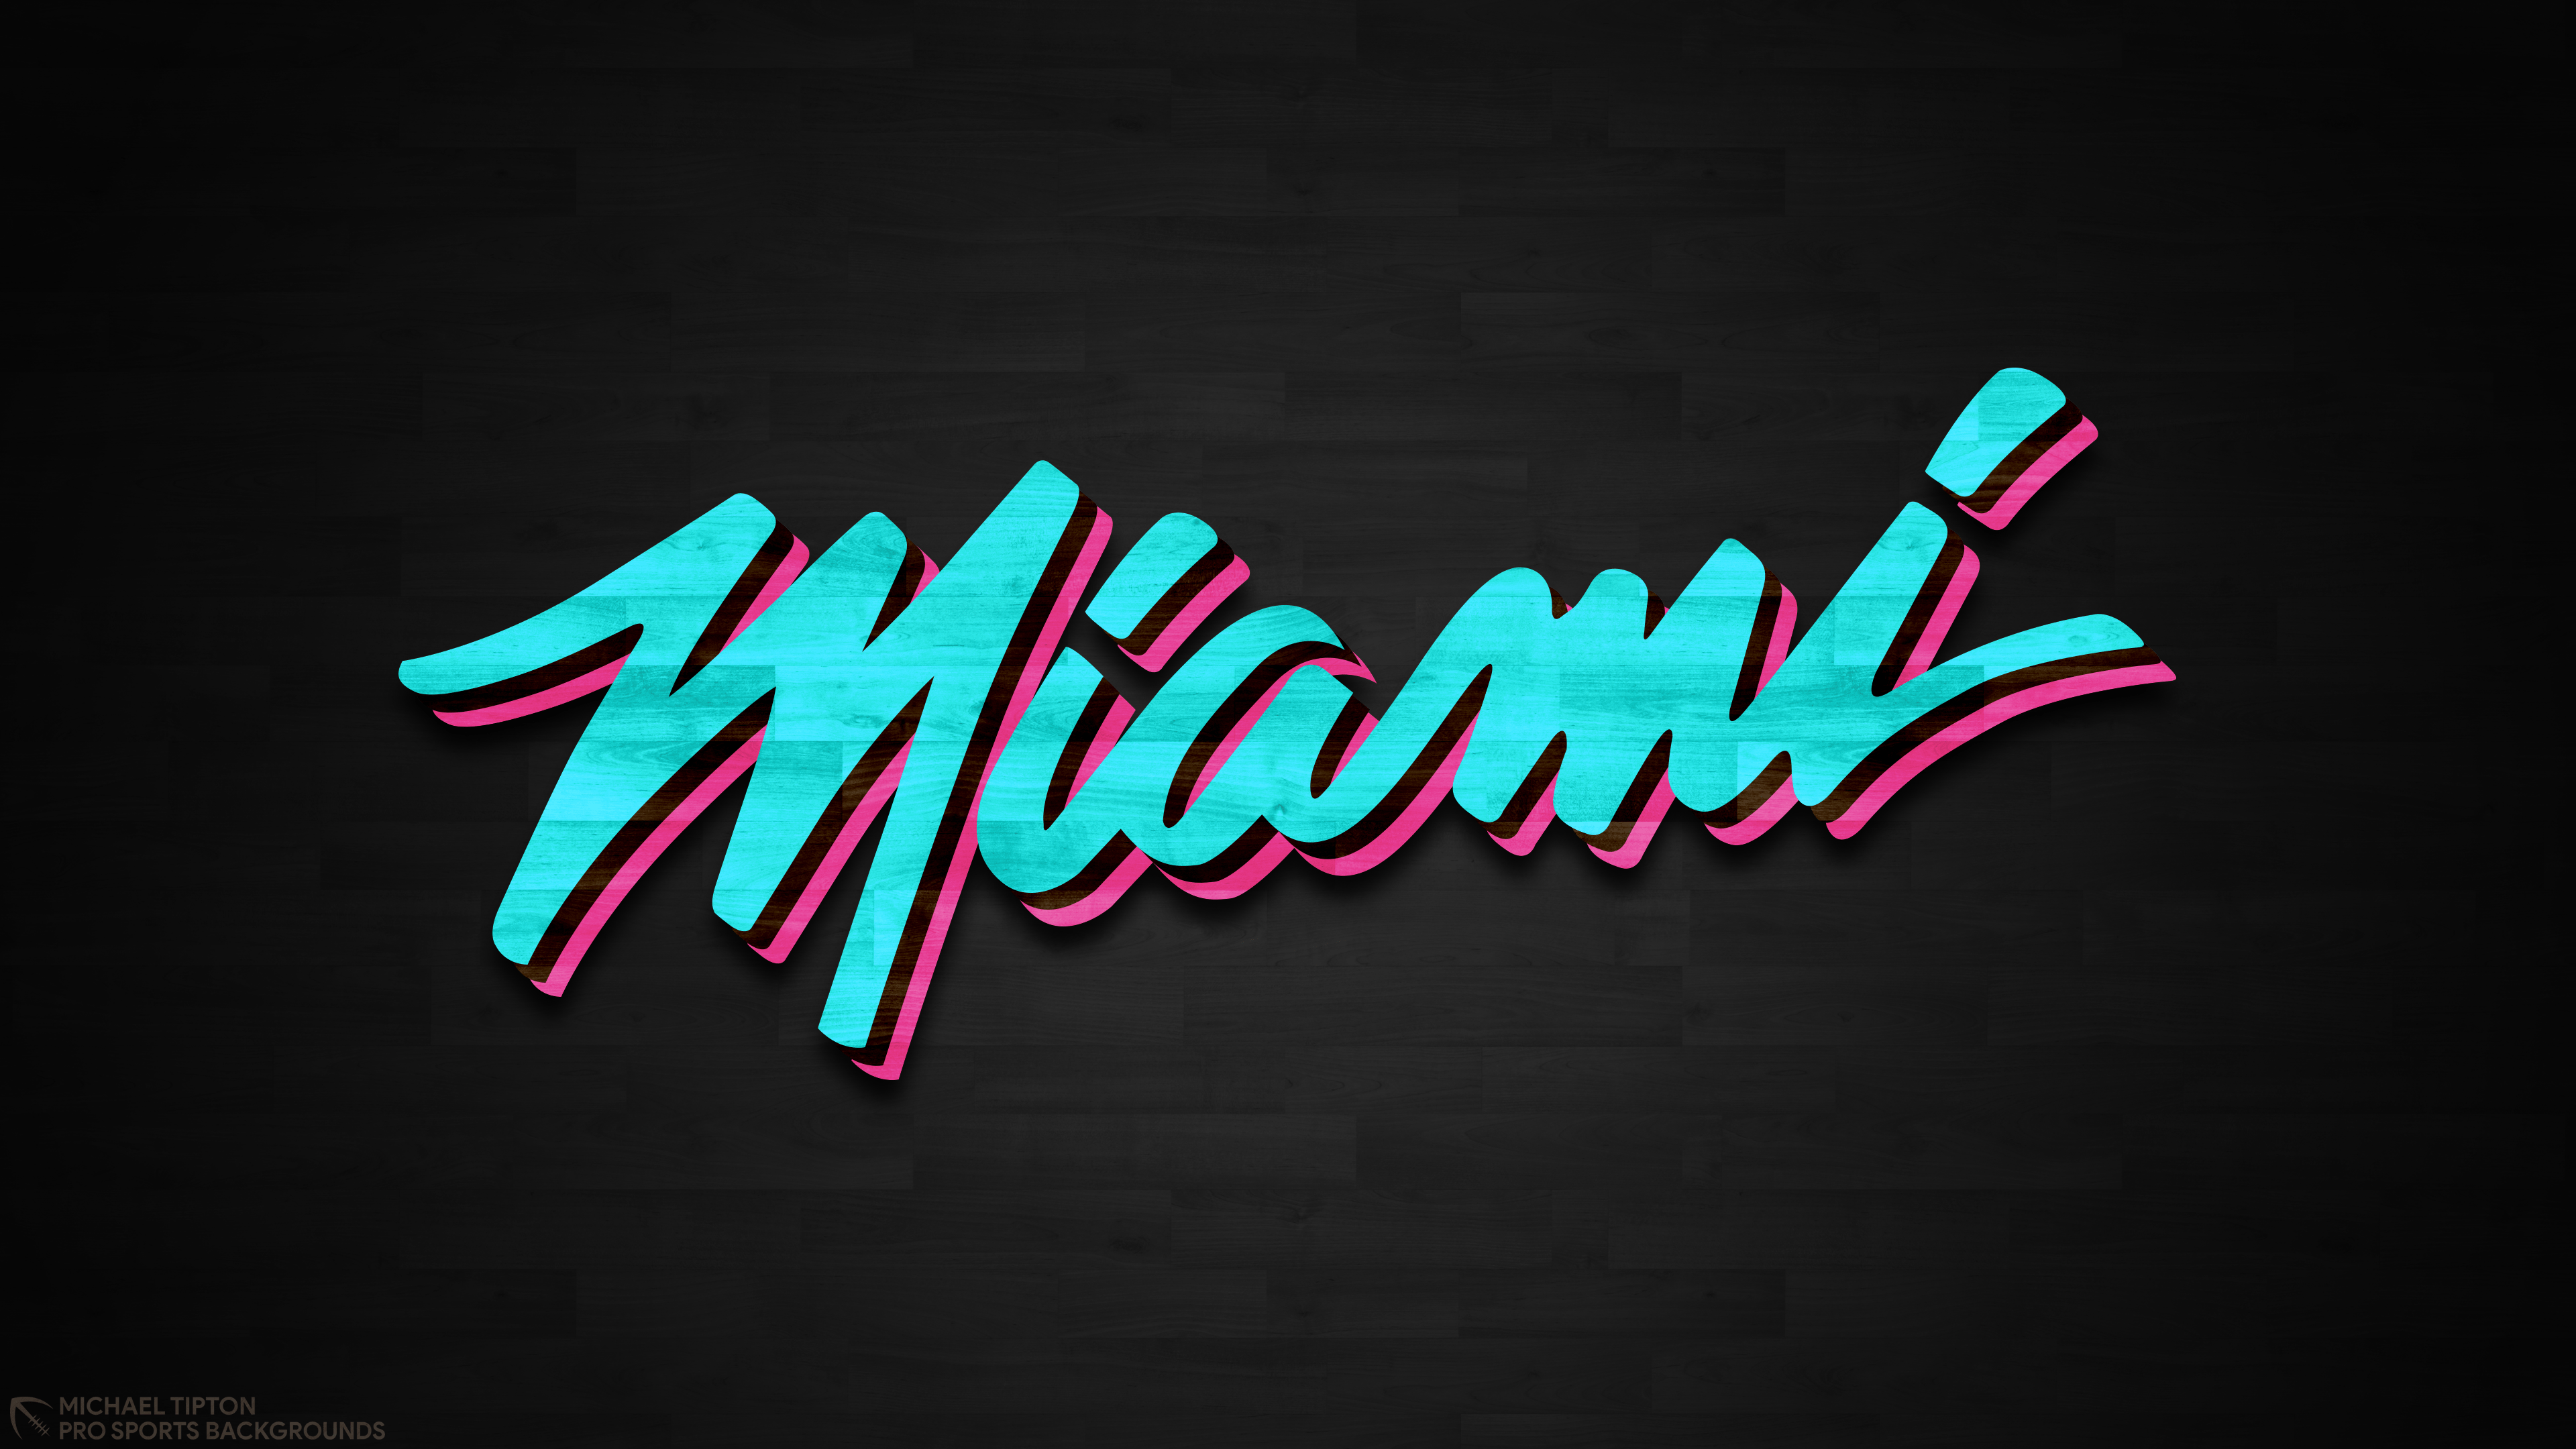 Miami Heat Vice Logo Wallpaper : 30 Home Games: Miami Heat: The ...